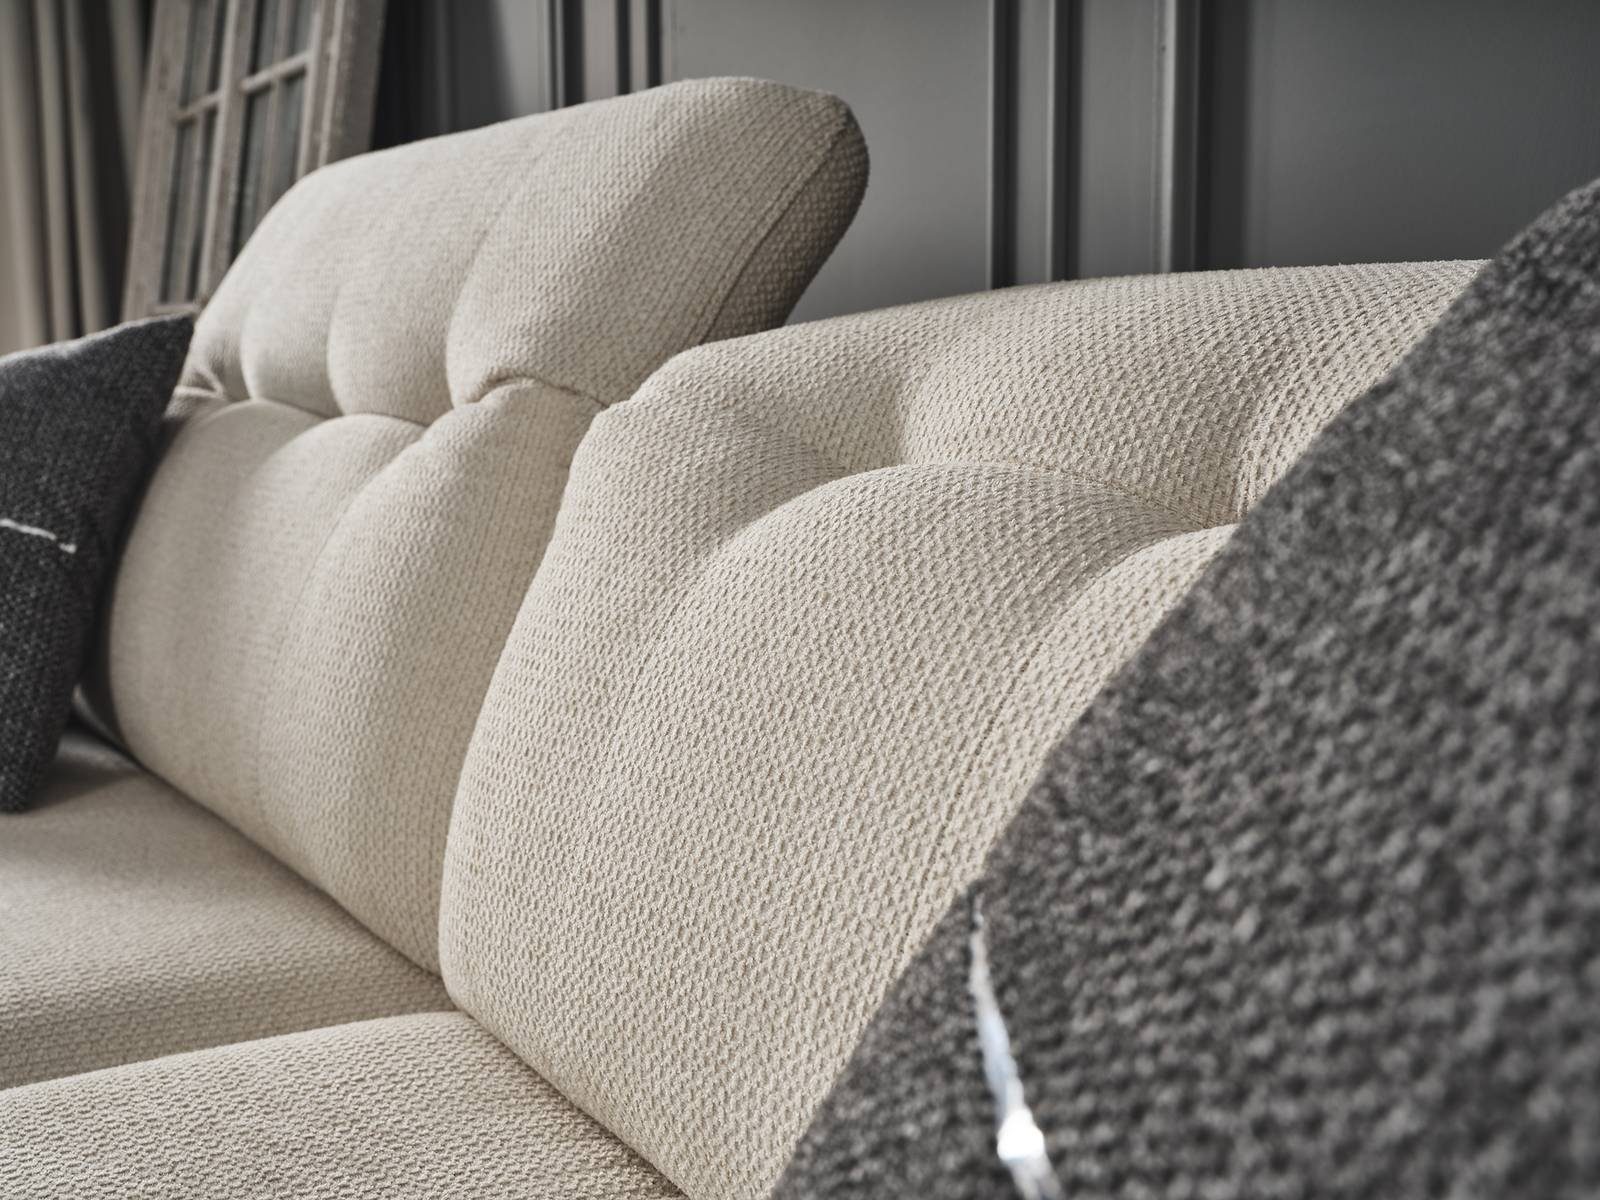 Möbel Stk. 1 Creme Quality Sofa Style, Made 3-Sitzer, Villa Stoff Turkey, pflegeleichter in